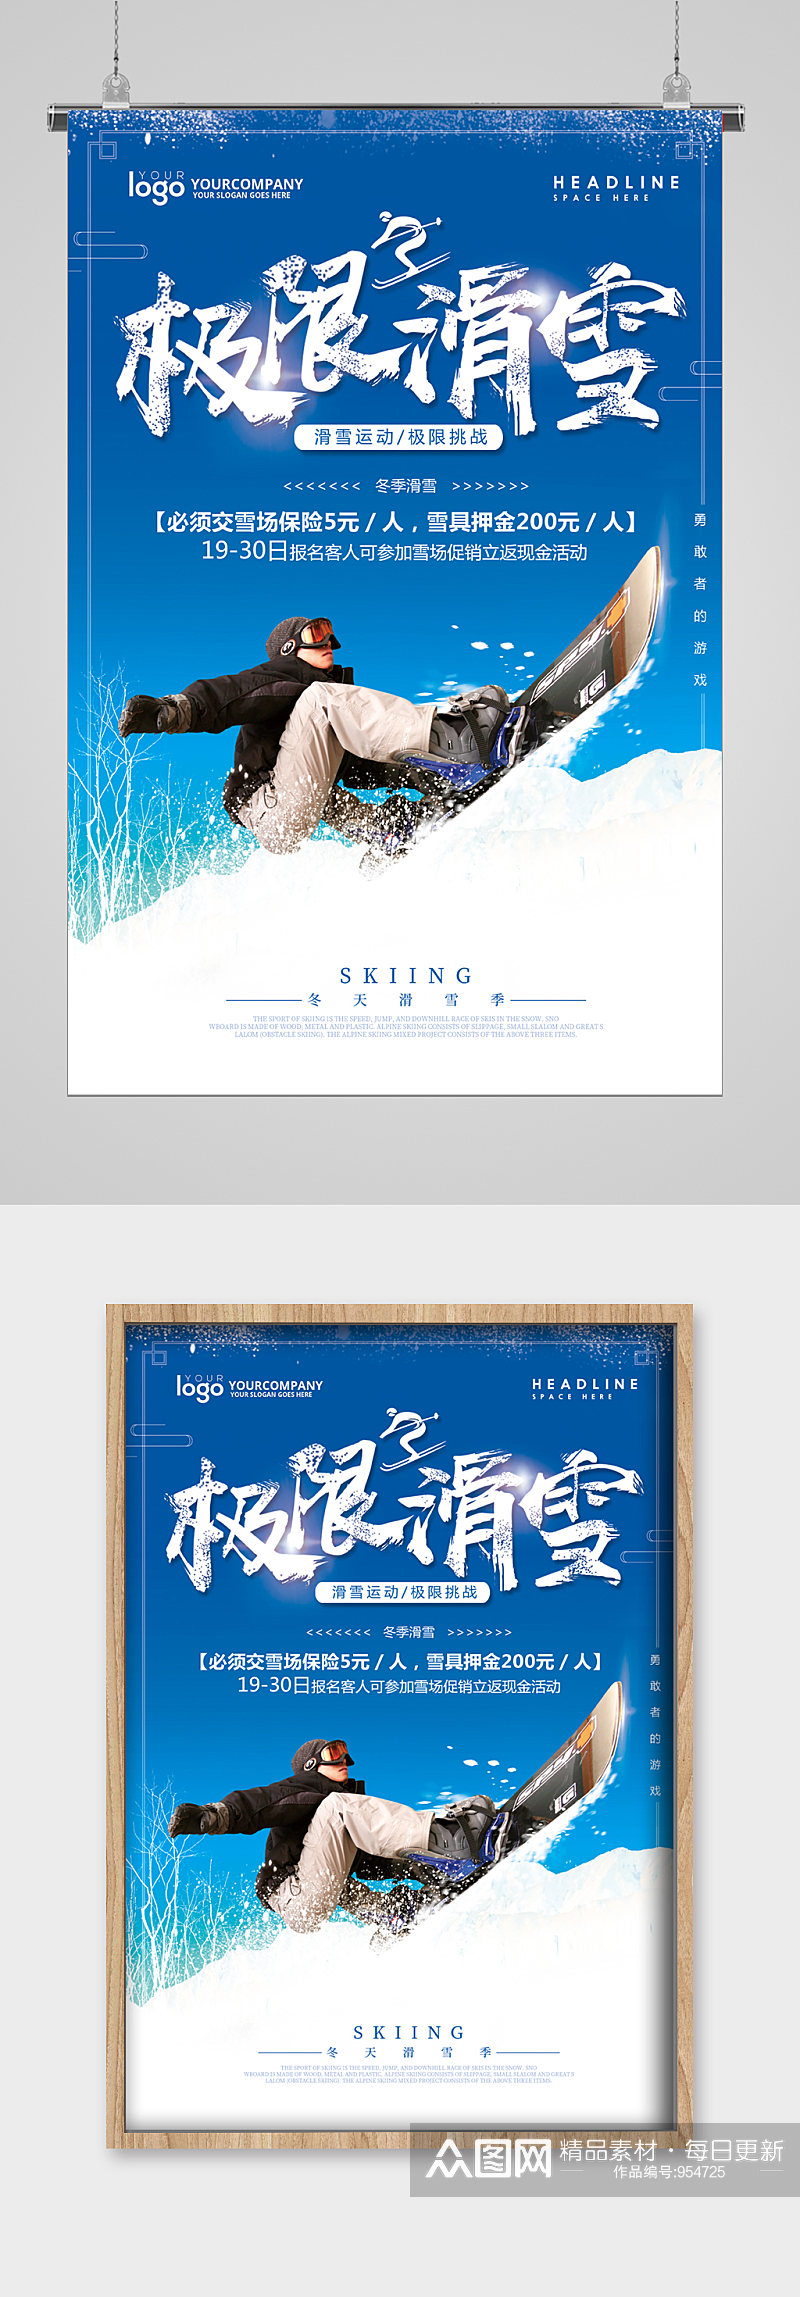 冬季滑雪极限宣传海报素材